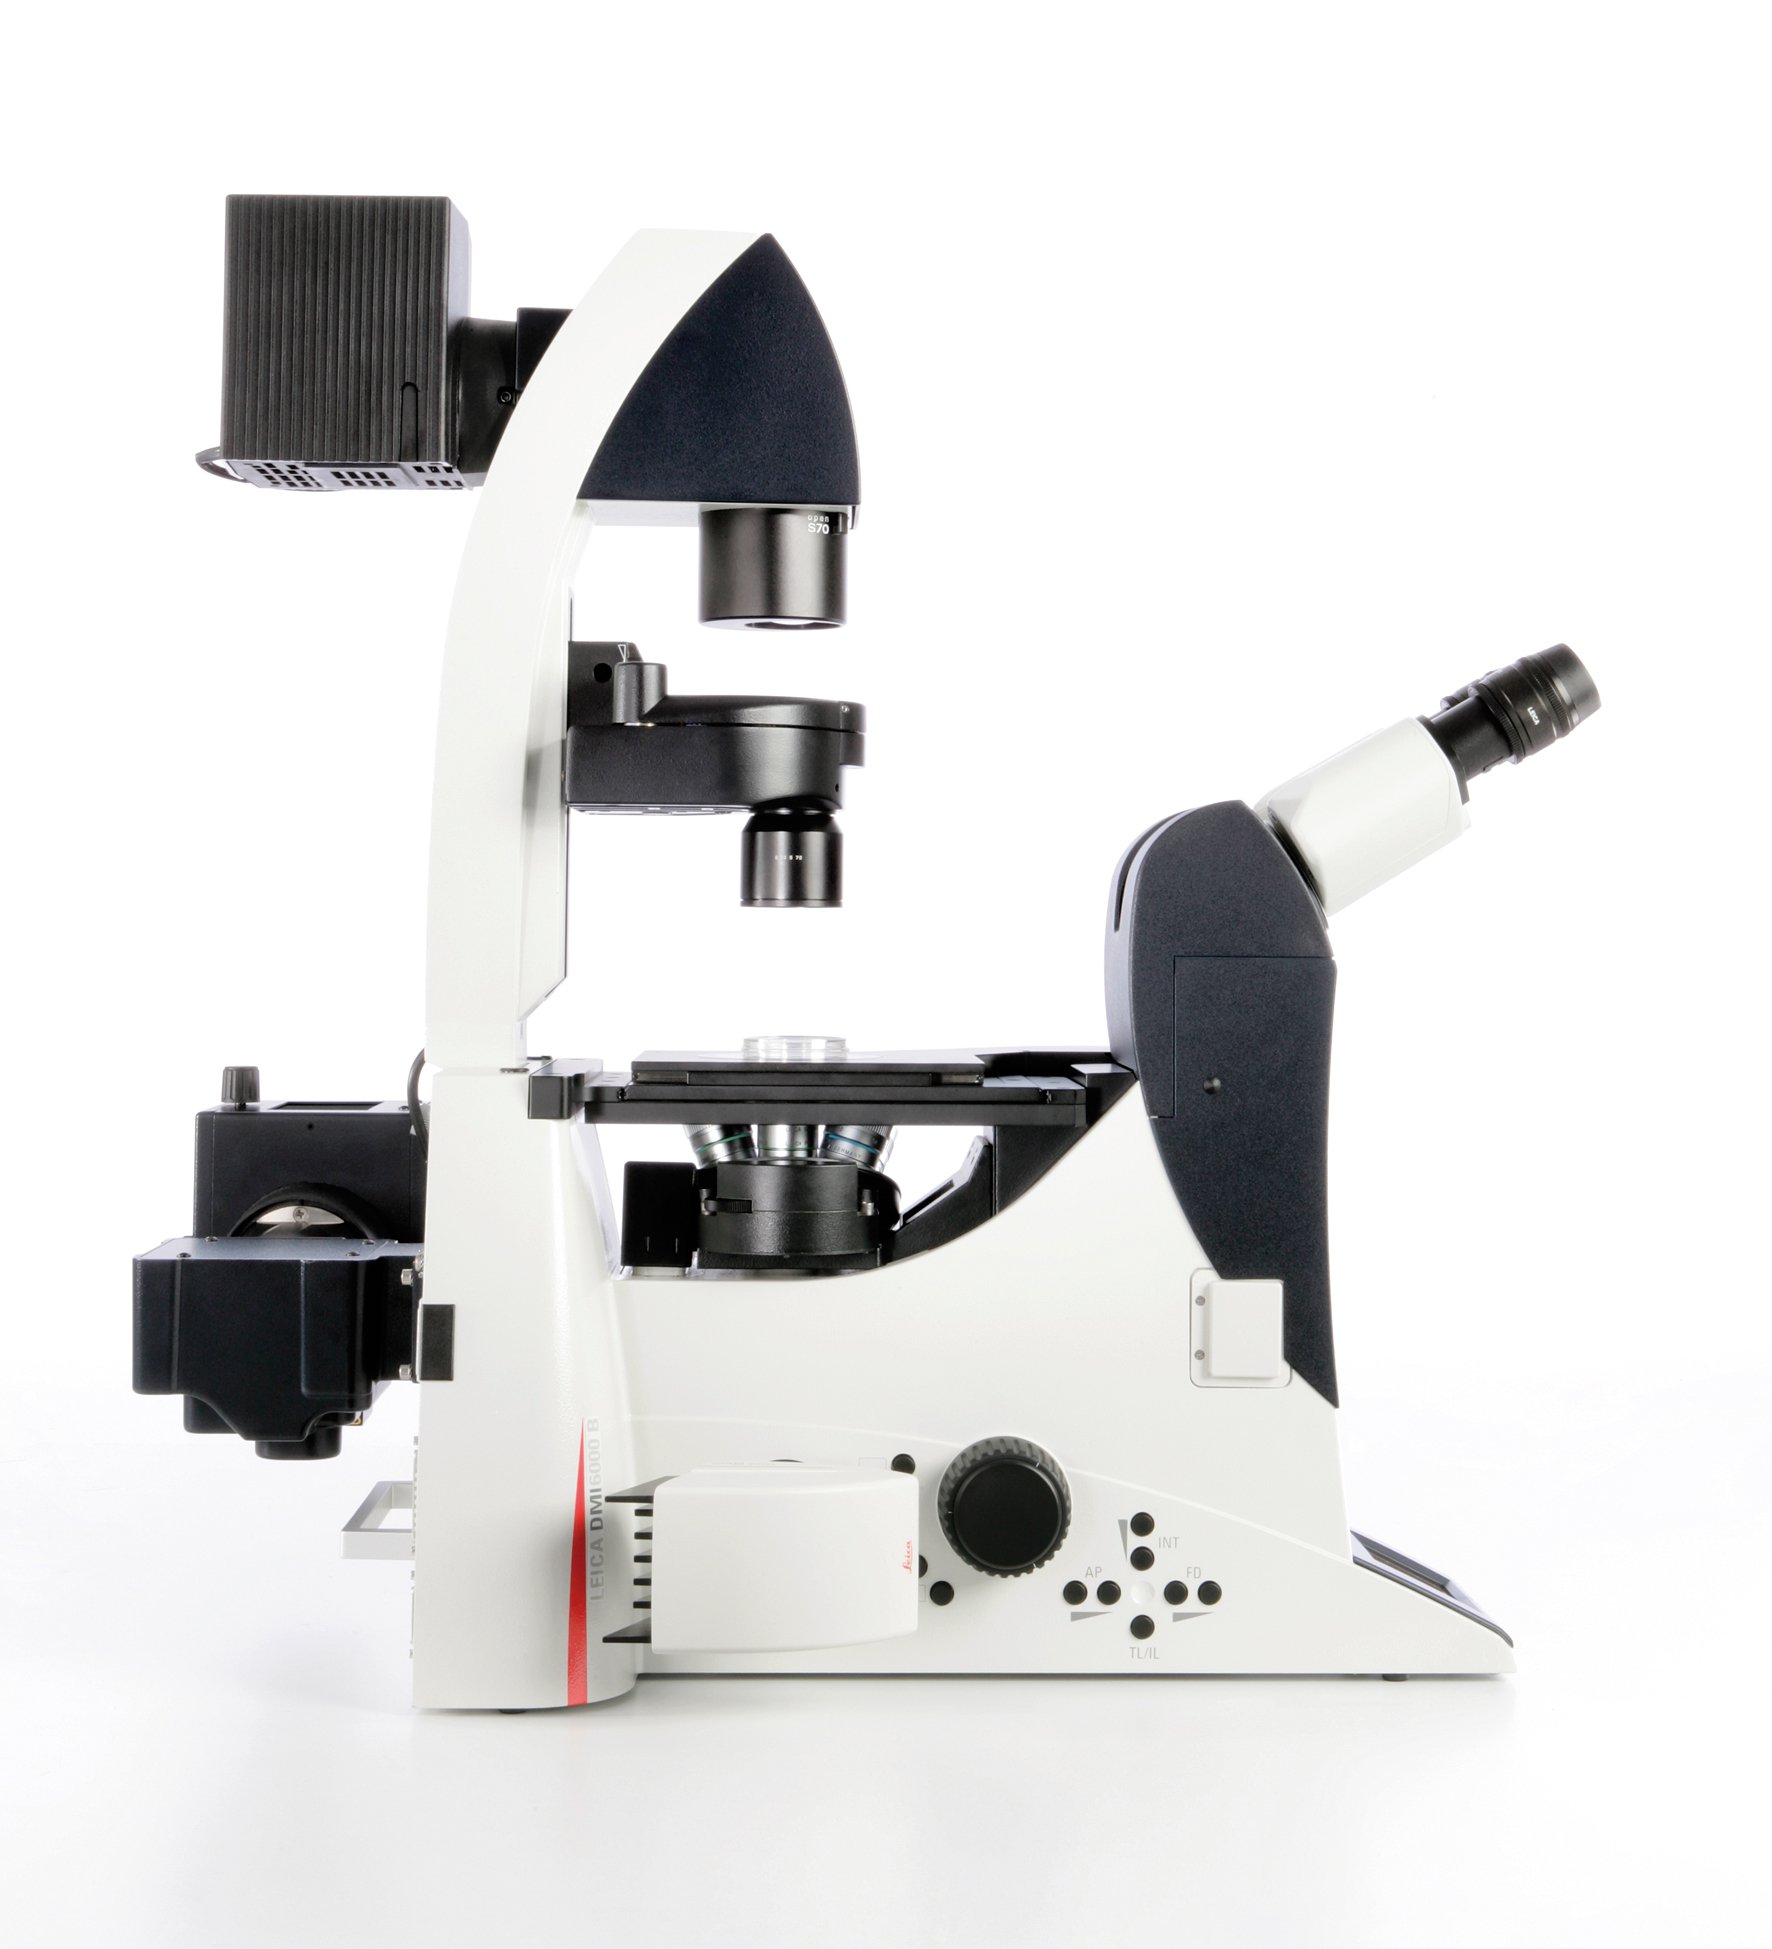 用于生物医学研究的全自动倒置显微镜 Leica DMI6000 B 